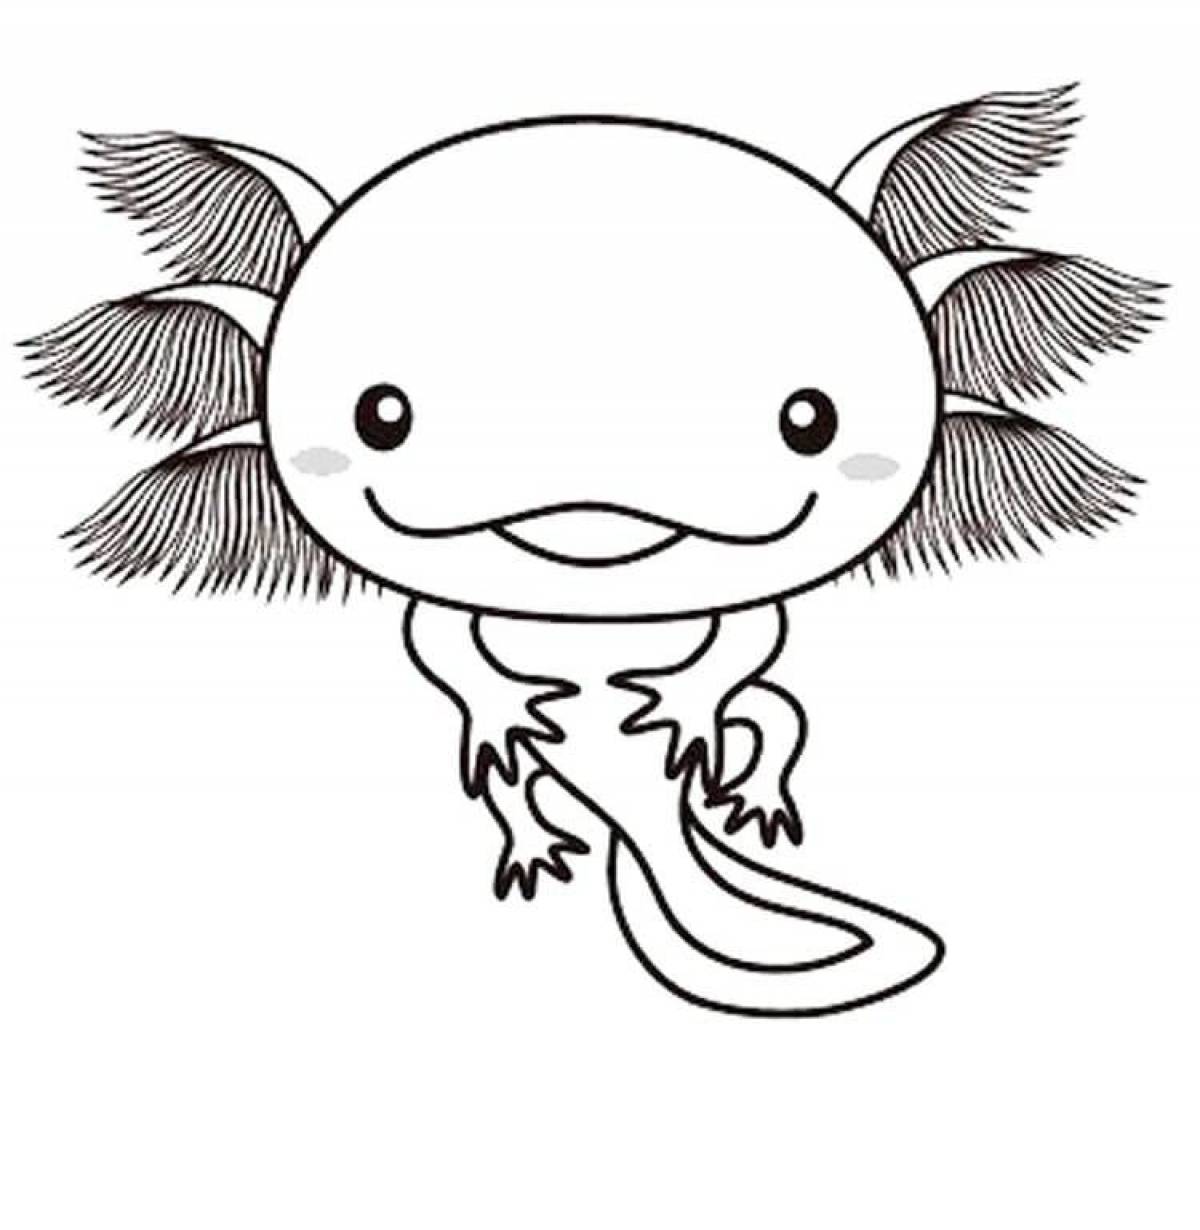 Witty axolotl coloring book